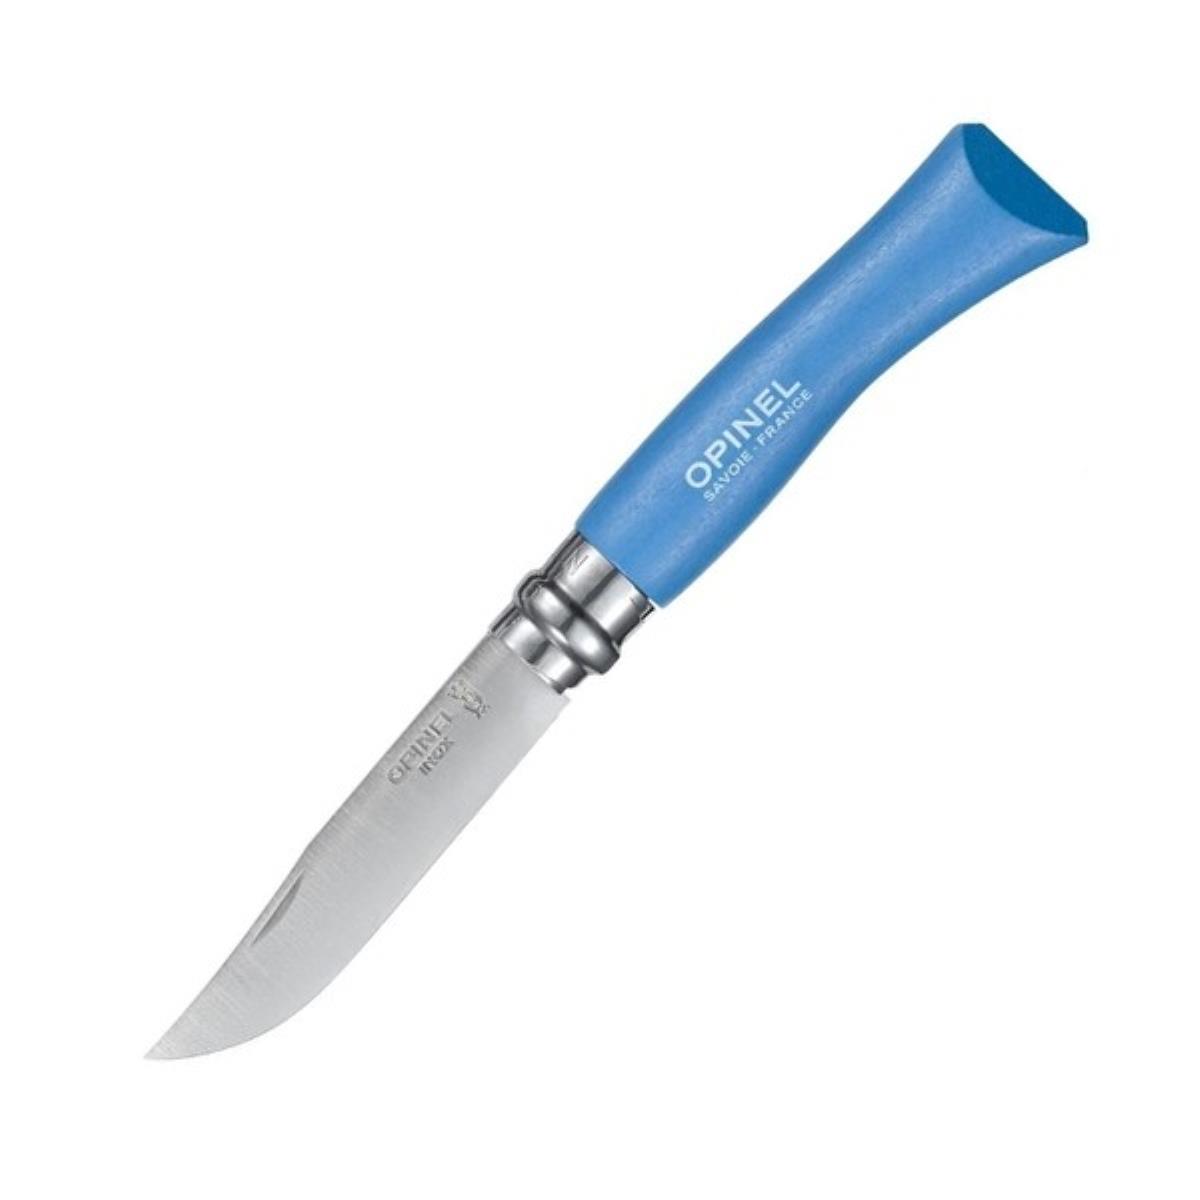 Нож №7 VRI Colored Tradition Sky blue нерж. сталь, рукоять граб, длина клинка8см (голубой) OPINEL